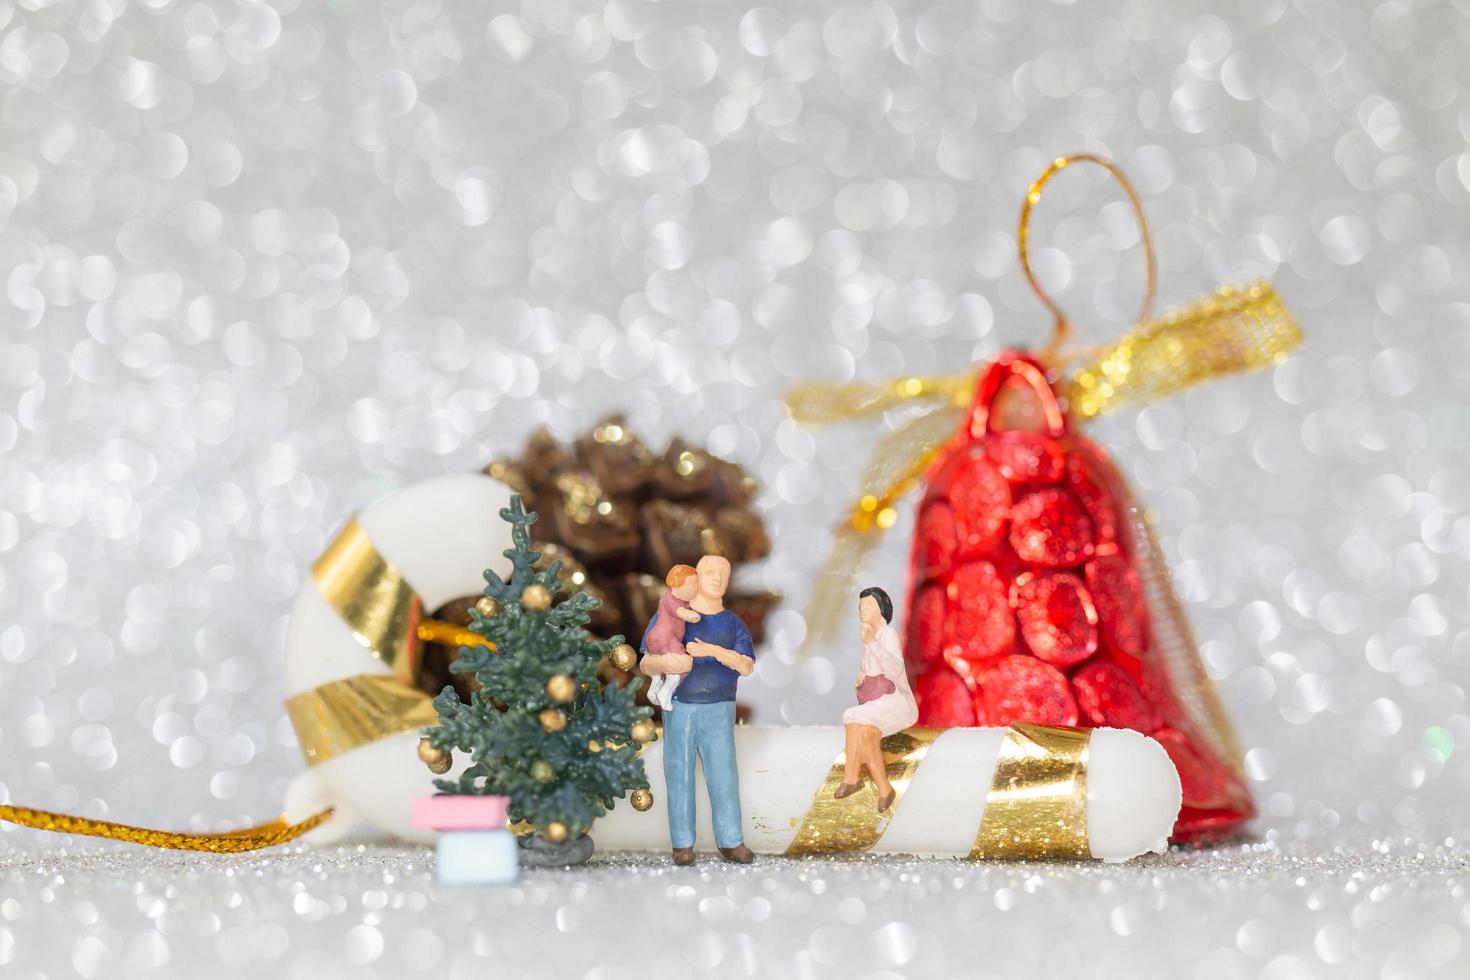 famille heureuse miniature célébrant le concept de noël, x-mas et bonne année photo